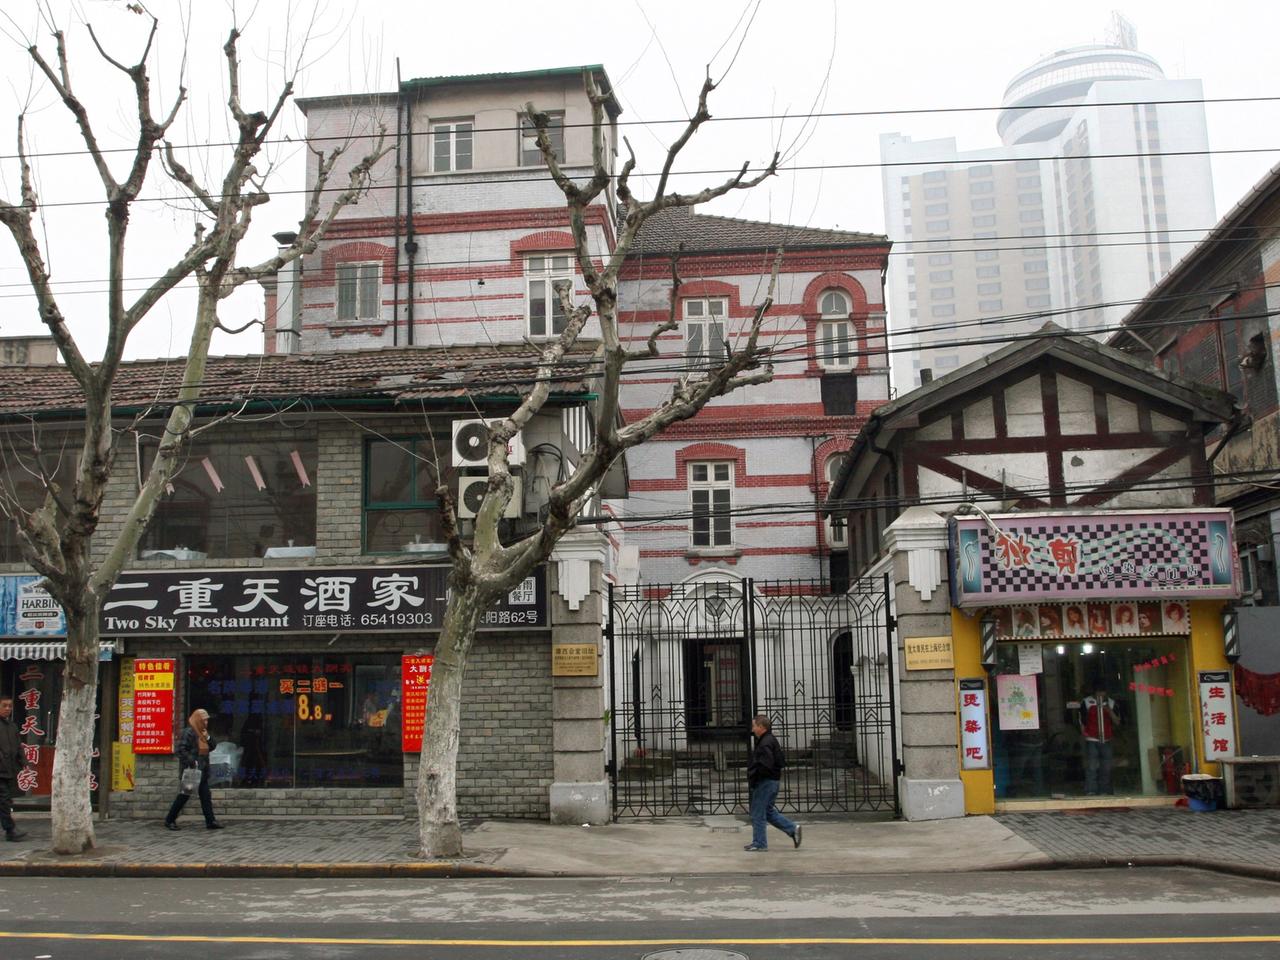 Ohel Moishe Synagoge (M) im Stadtteil Hongkou in Schanghai. In diesem Stadtteil lebten einst Juden aus Europa.